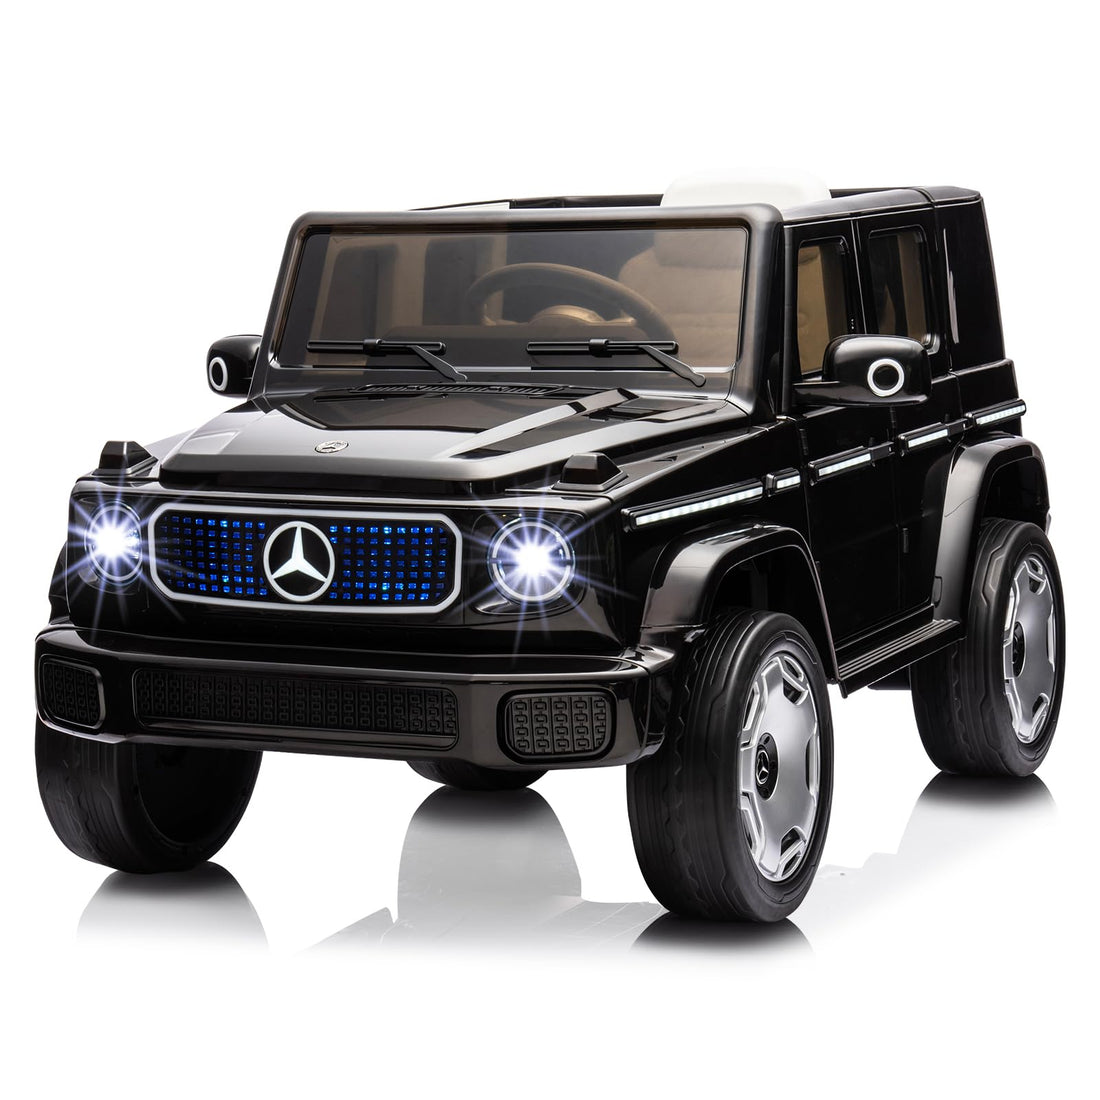 Garvee 12V Mercedes-Benz EQG Kids Ride-On: Dual Motors, 4.0 MPH, LED, USB/BT Music, Remote Control, Soft Start, for Ages 3-7